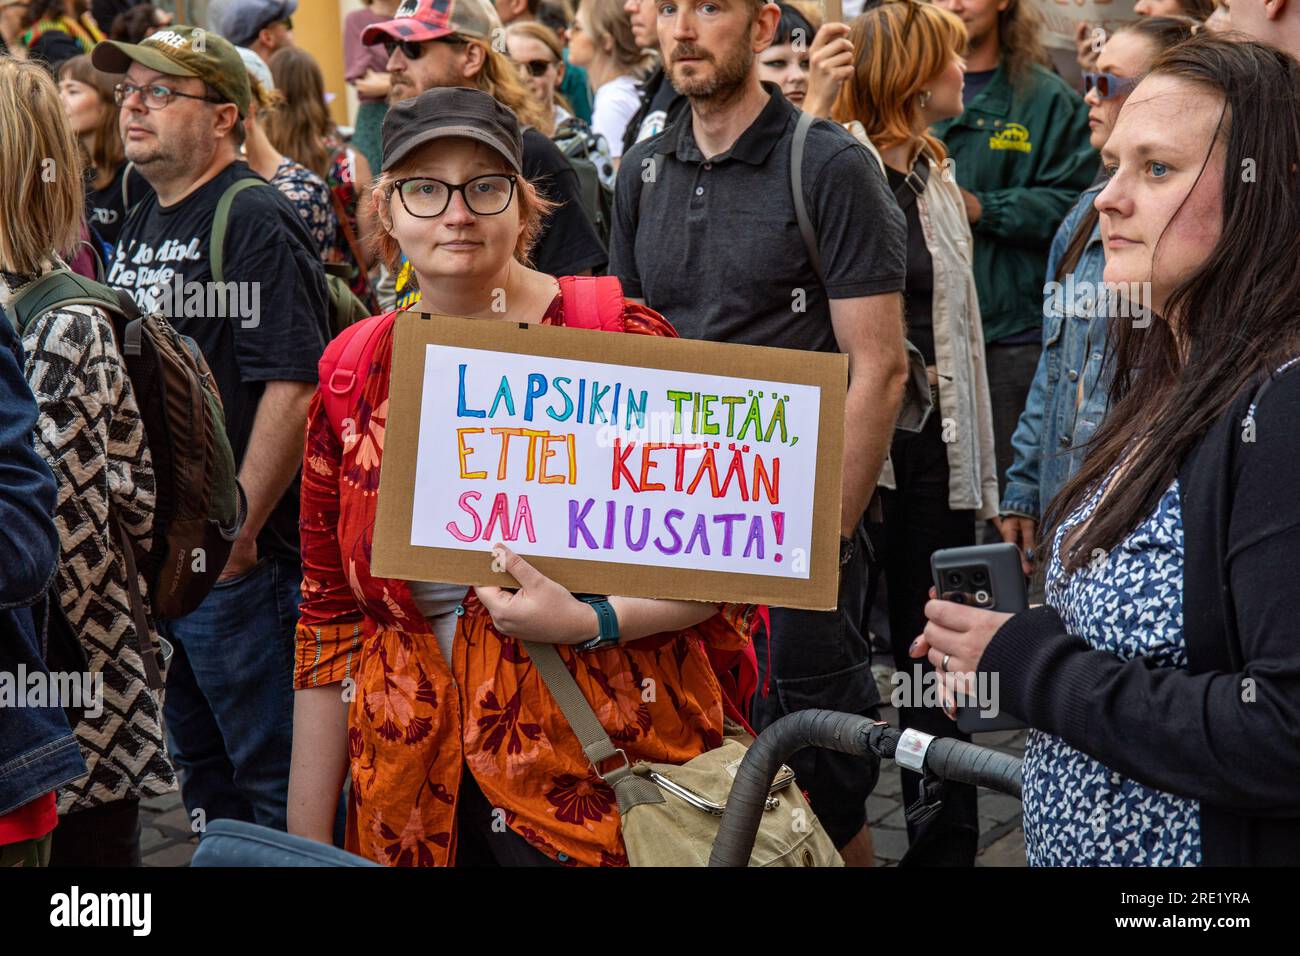 Donna con un cartello fatto a mano a Nollatoleranssi! Manifestazione contro la politica di estrema destra nel governo del primo ministro Petteri Orpo a Helsinki, Finlandia. Foto Stock